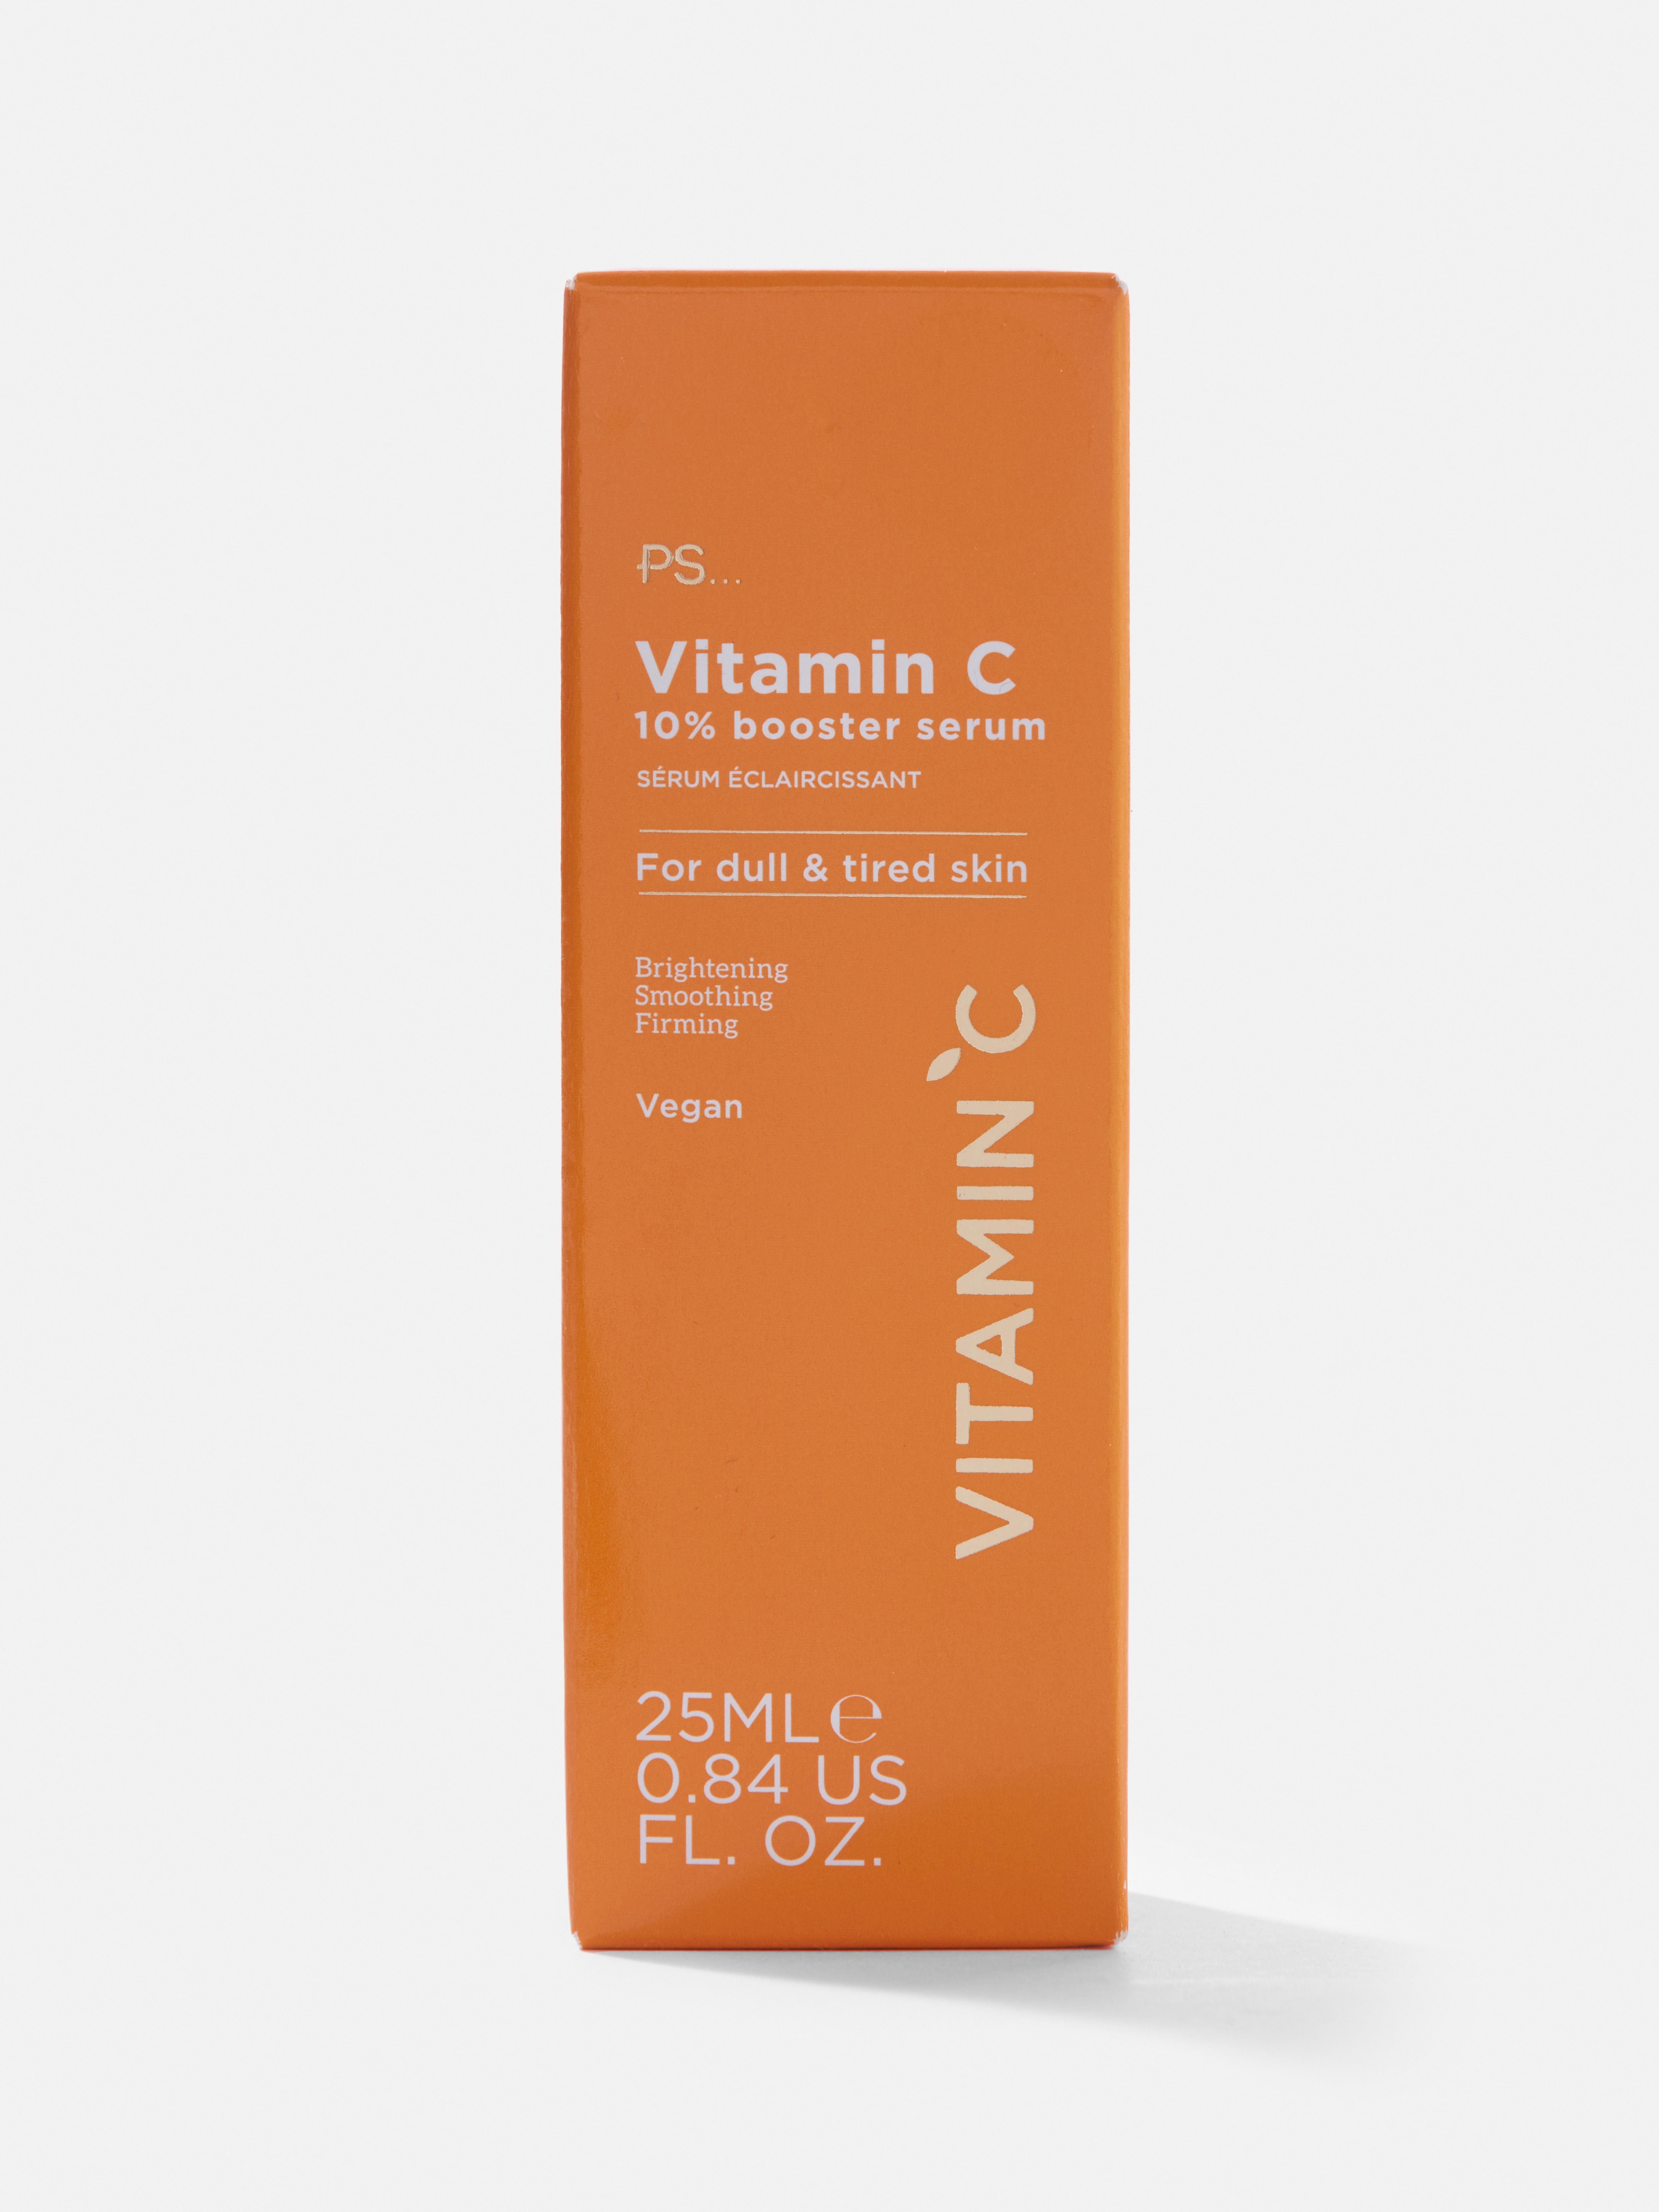 PS... Skin + Vitamin C 10% Booster Serum